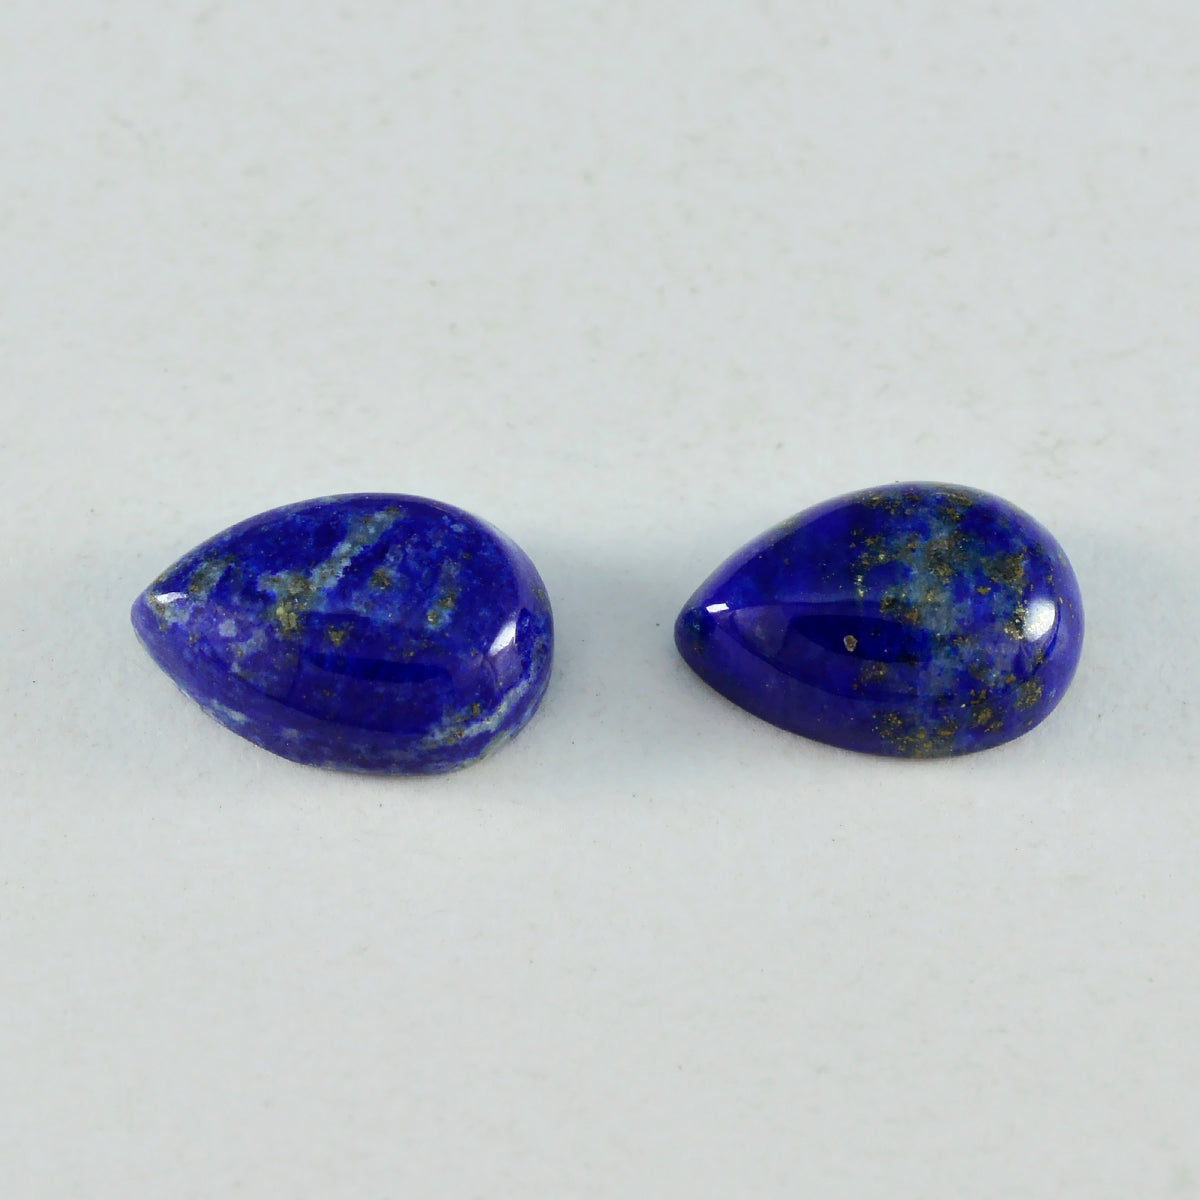 riyogems 1 шт. синий лазурит кабошон 10x14 мм грушевидной формы красивый качественный драгоценный камень